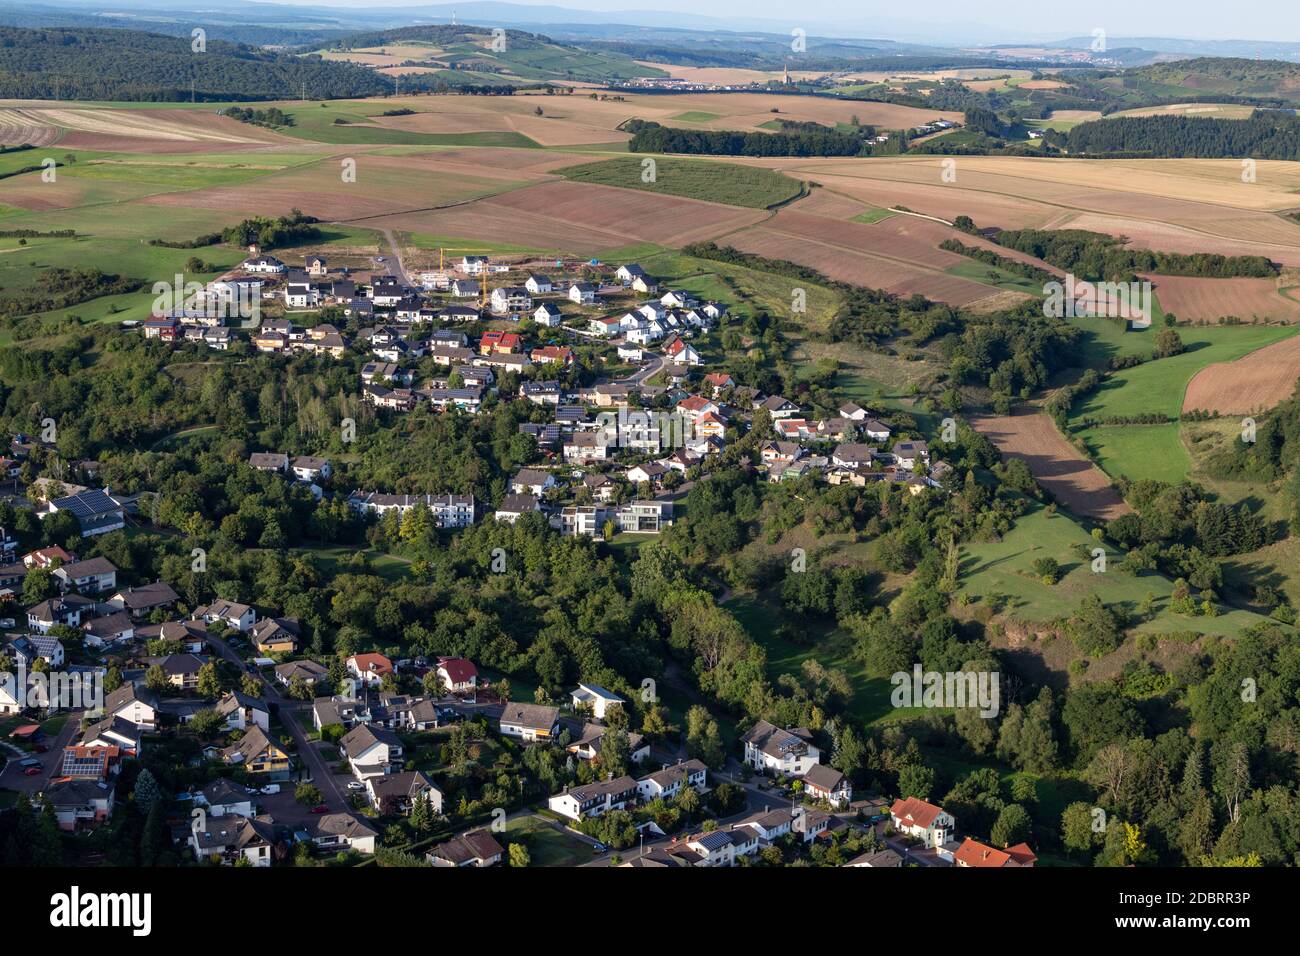 Vue aérienne d'un paysage en Allemagne, Rheinland-pfalz près de Bad Sobernheim avec la rivière Nahe, prairie, terres agricoles, Forêts, collines, montagnes Banque D'Images